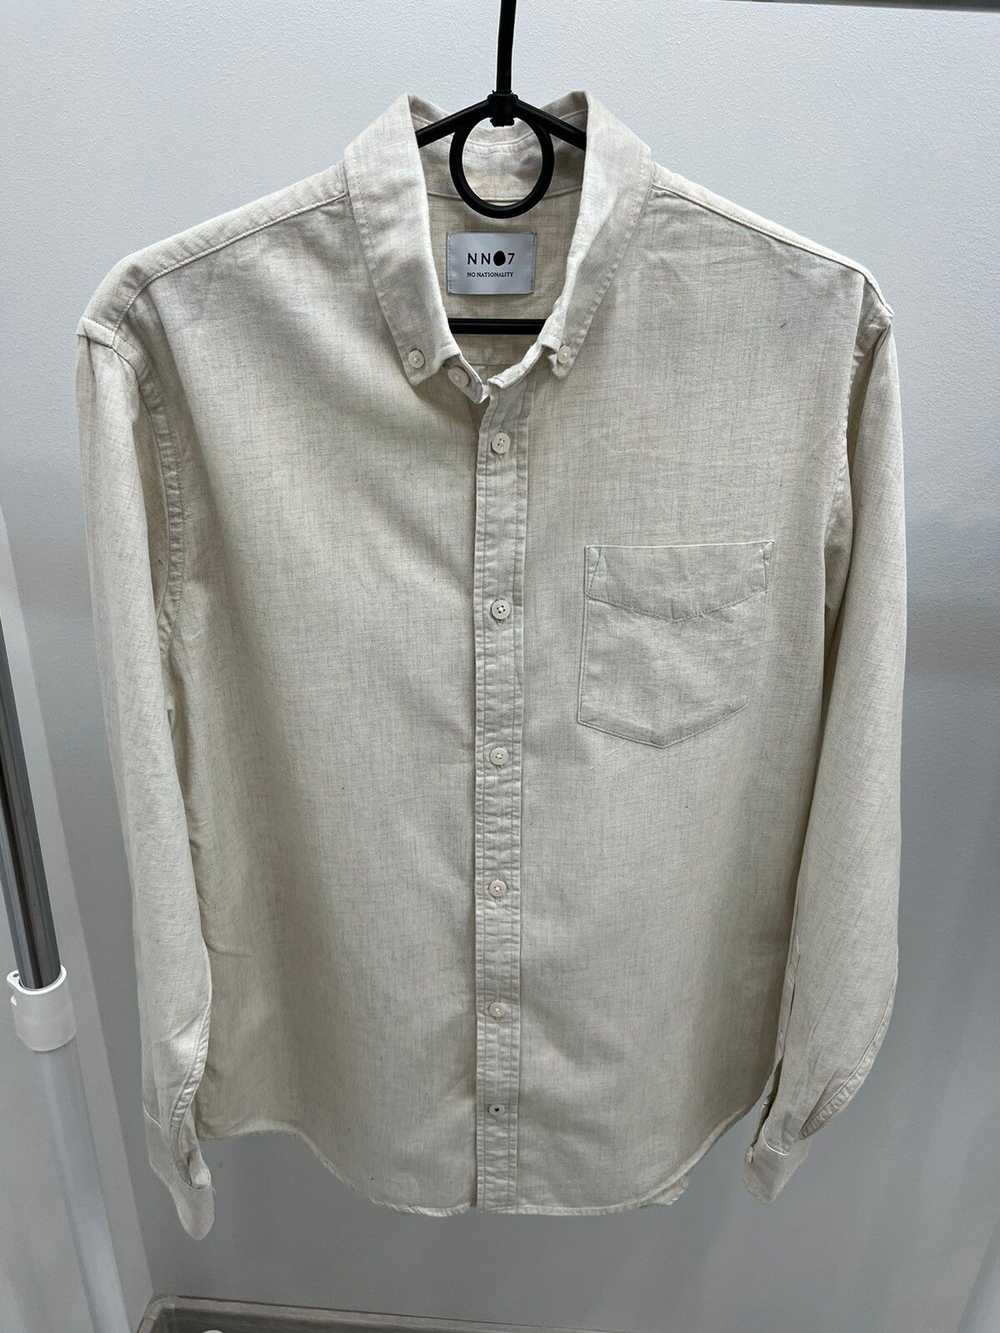 Nn07 NN07 Levon Bd Cotton Button Up Shirt - image 1